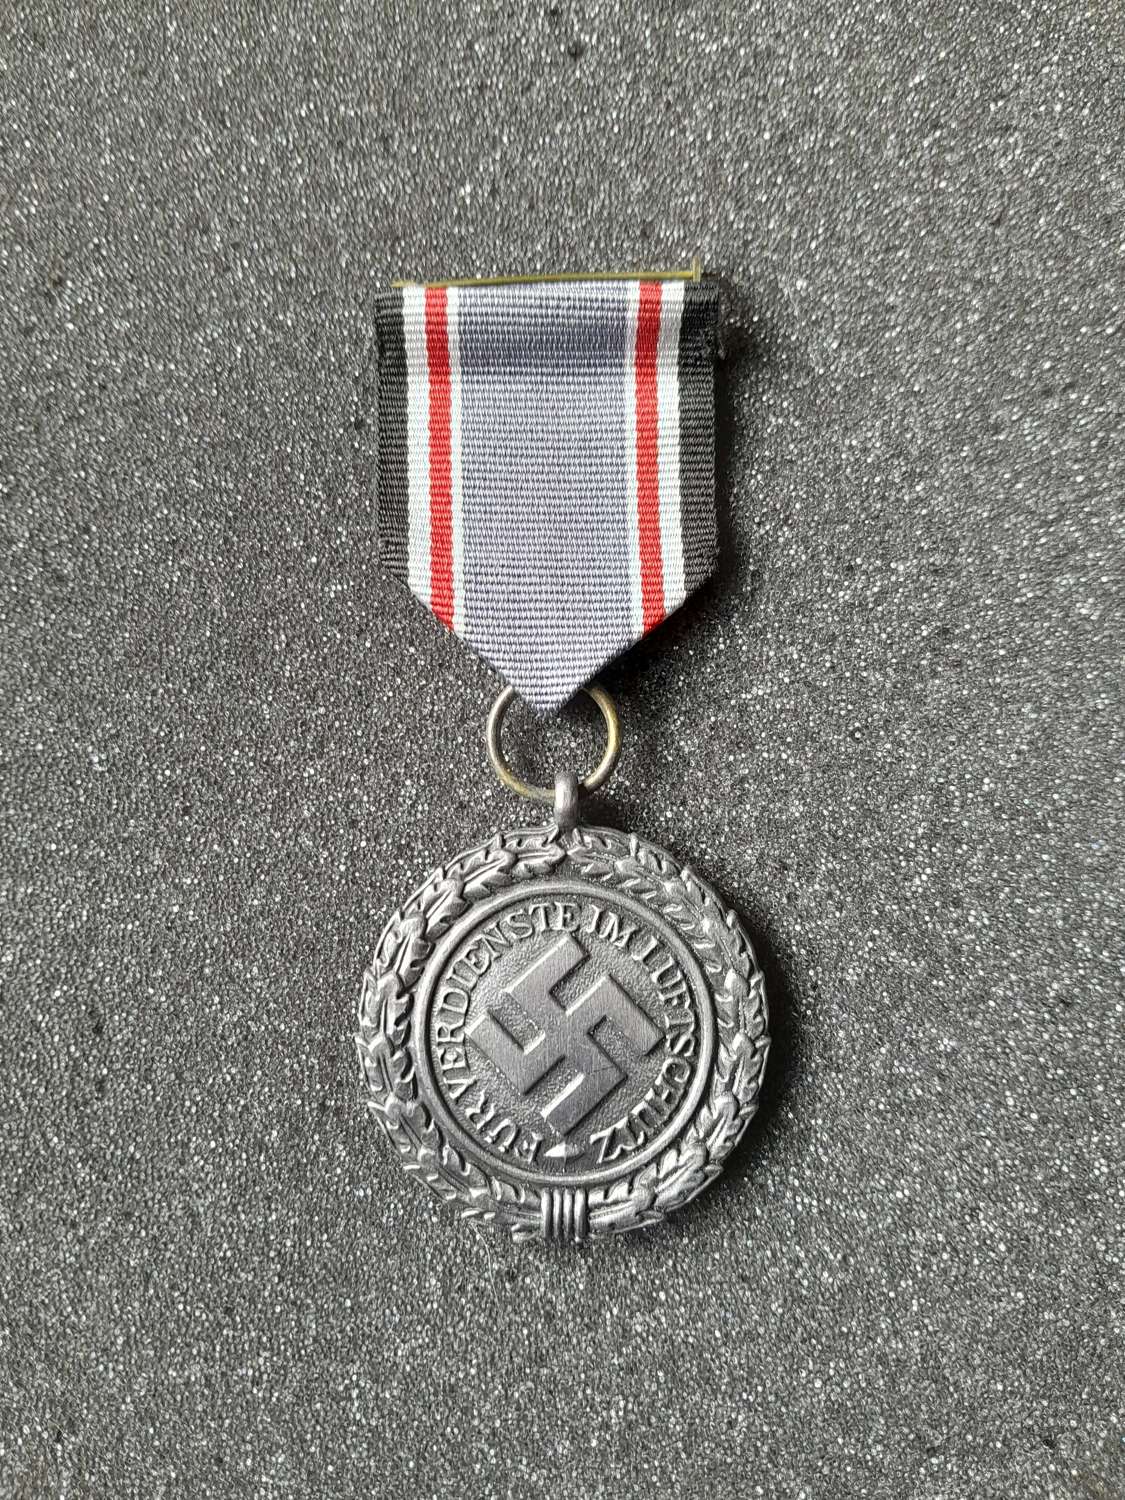 Third Reich Period Luftschutz 2nd class medal